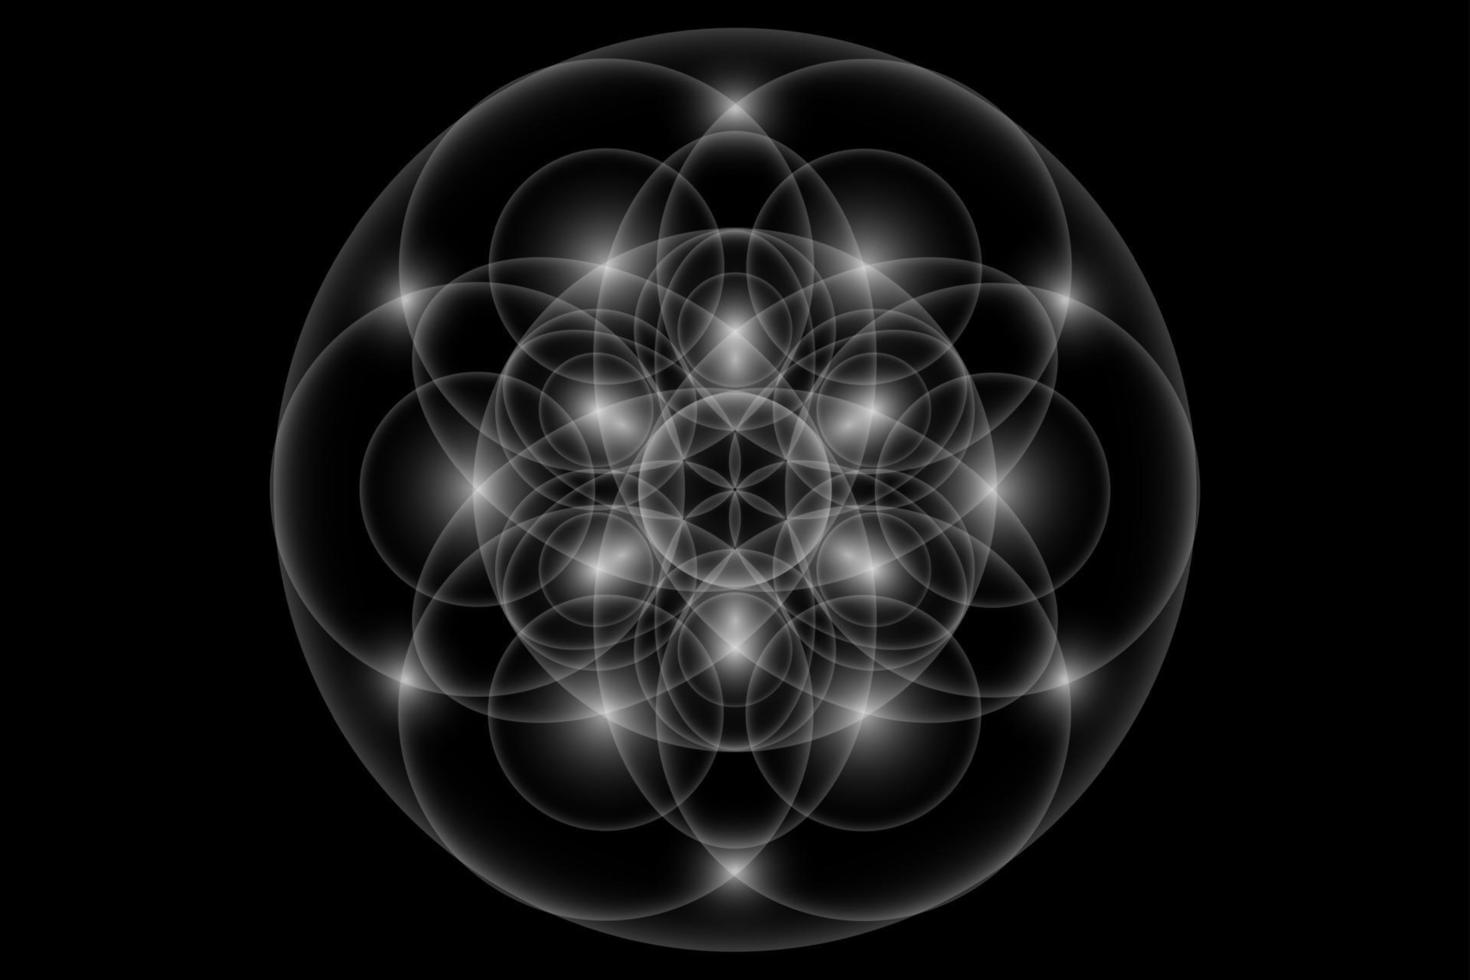 semilla de la vida, geometría sagrada, flor de la vida, símbolo del logotipo de luz de armonía y equilibrio, ornamento geométrico brillante, vector de loto blanco aislado sobre fondo negro